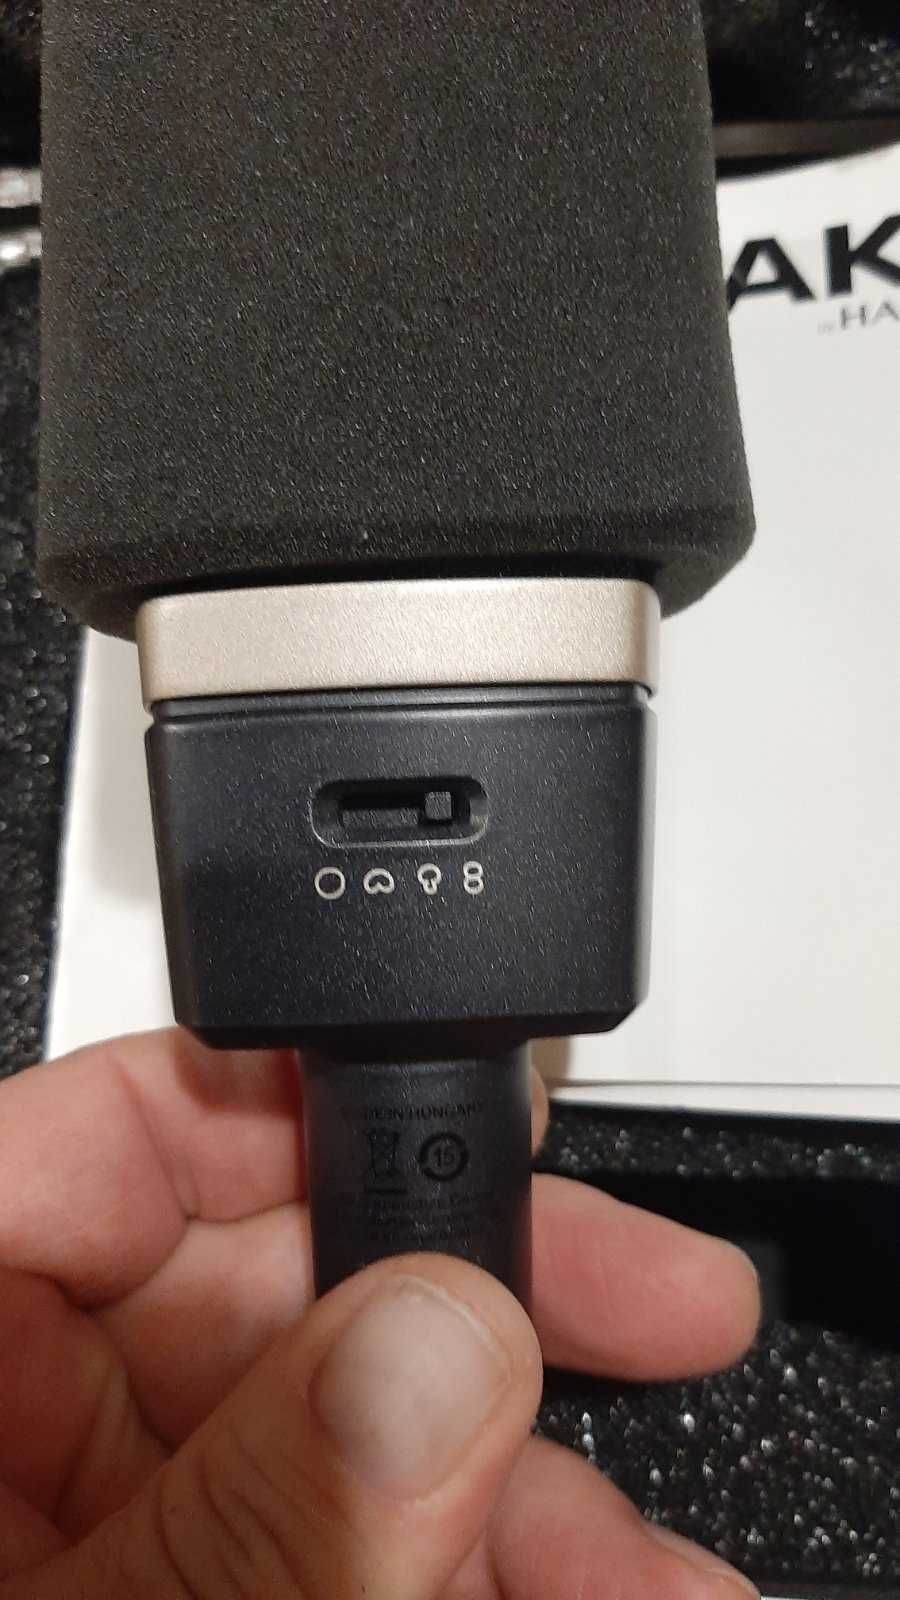 Студийный микрофон AKG C314